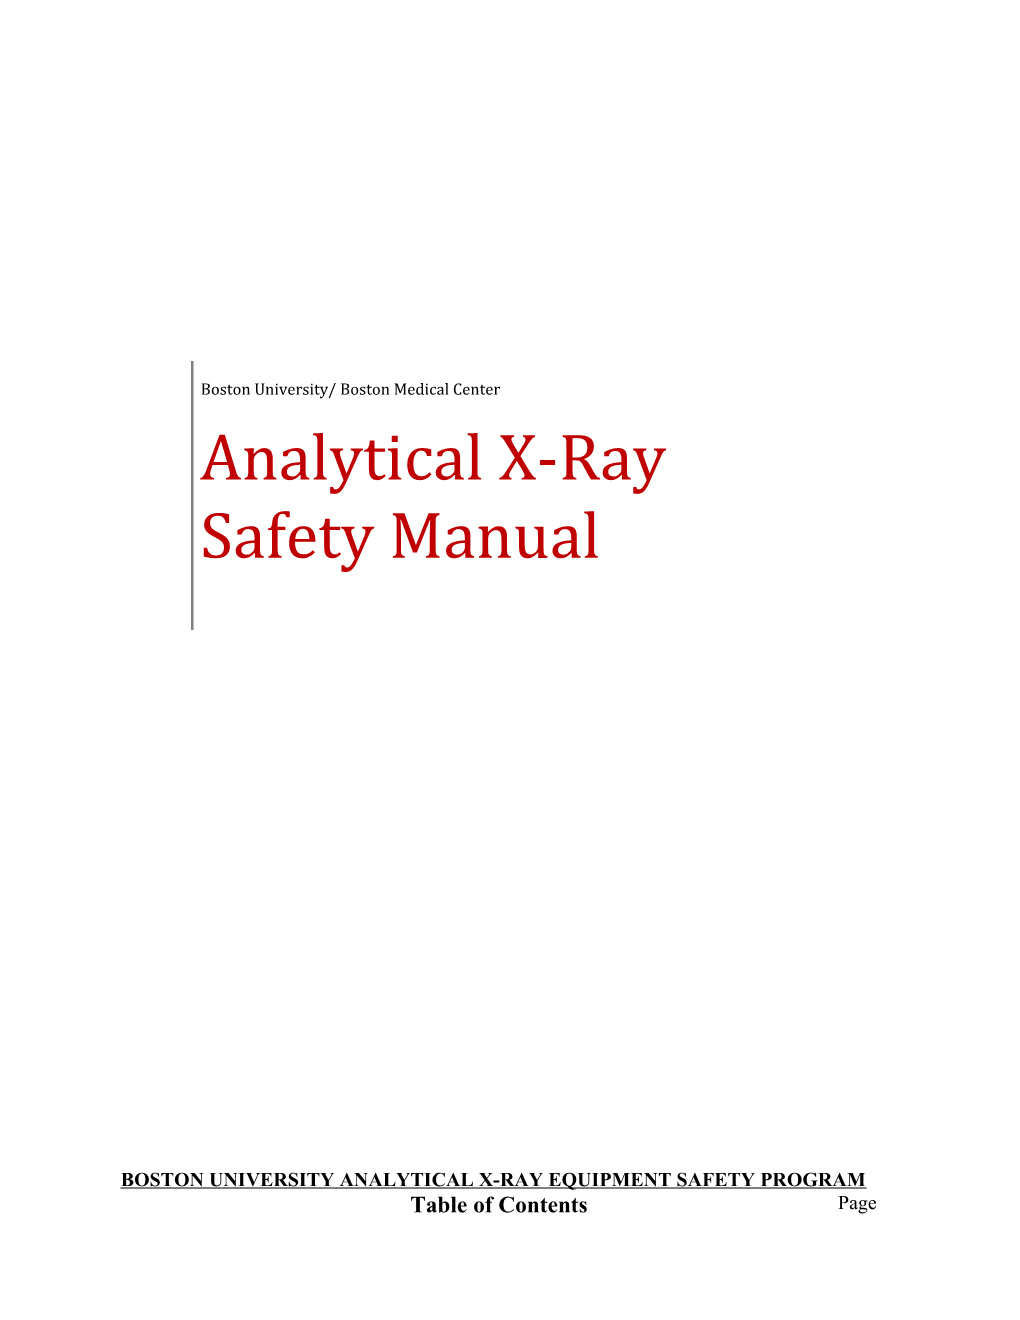 Boston University Analytical X-Ray Equipment